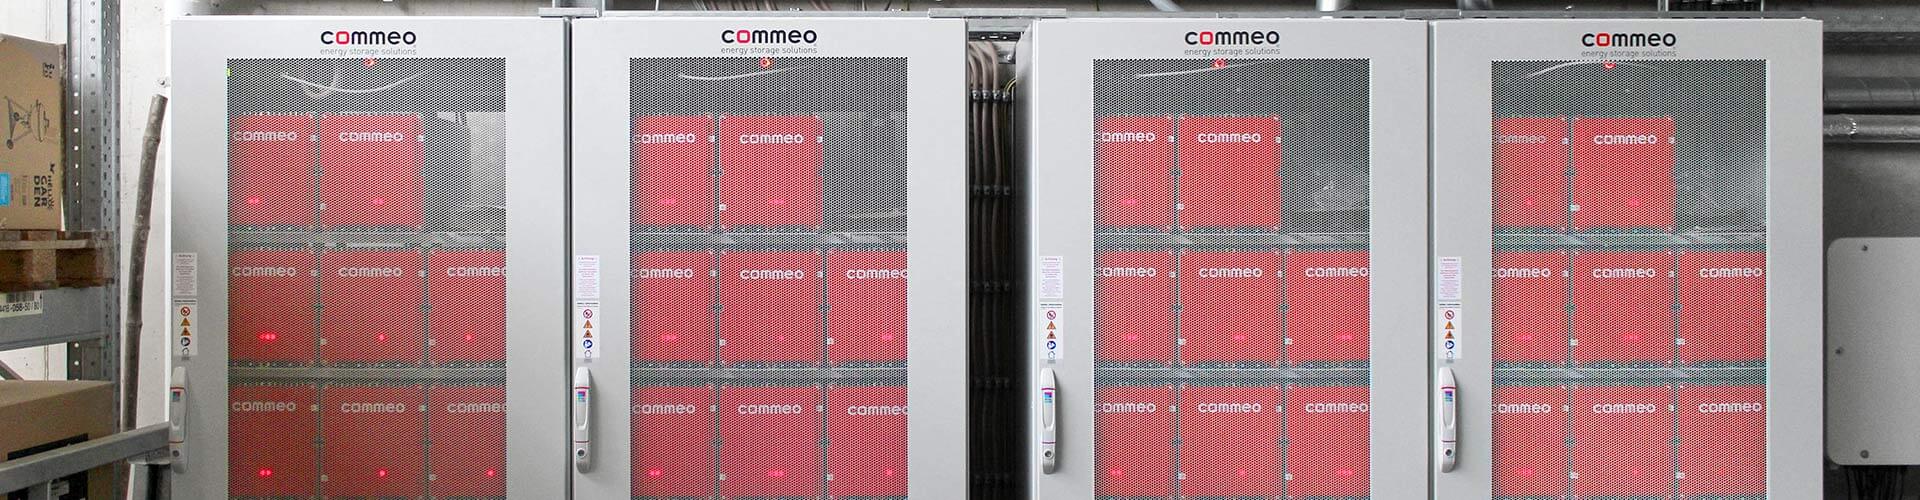 Das Bild zeigt vier Batteriespeichersysteme von Commeo, die im Gartencenter Ostmann installiert sind.